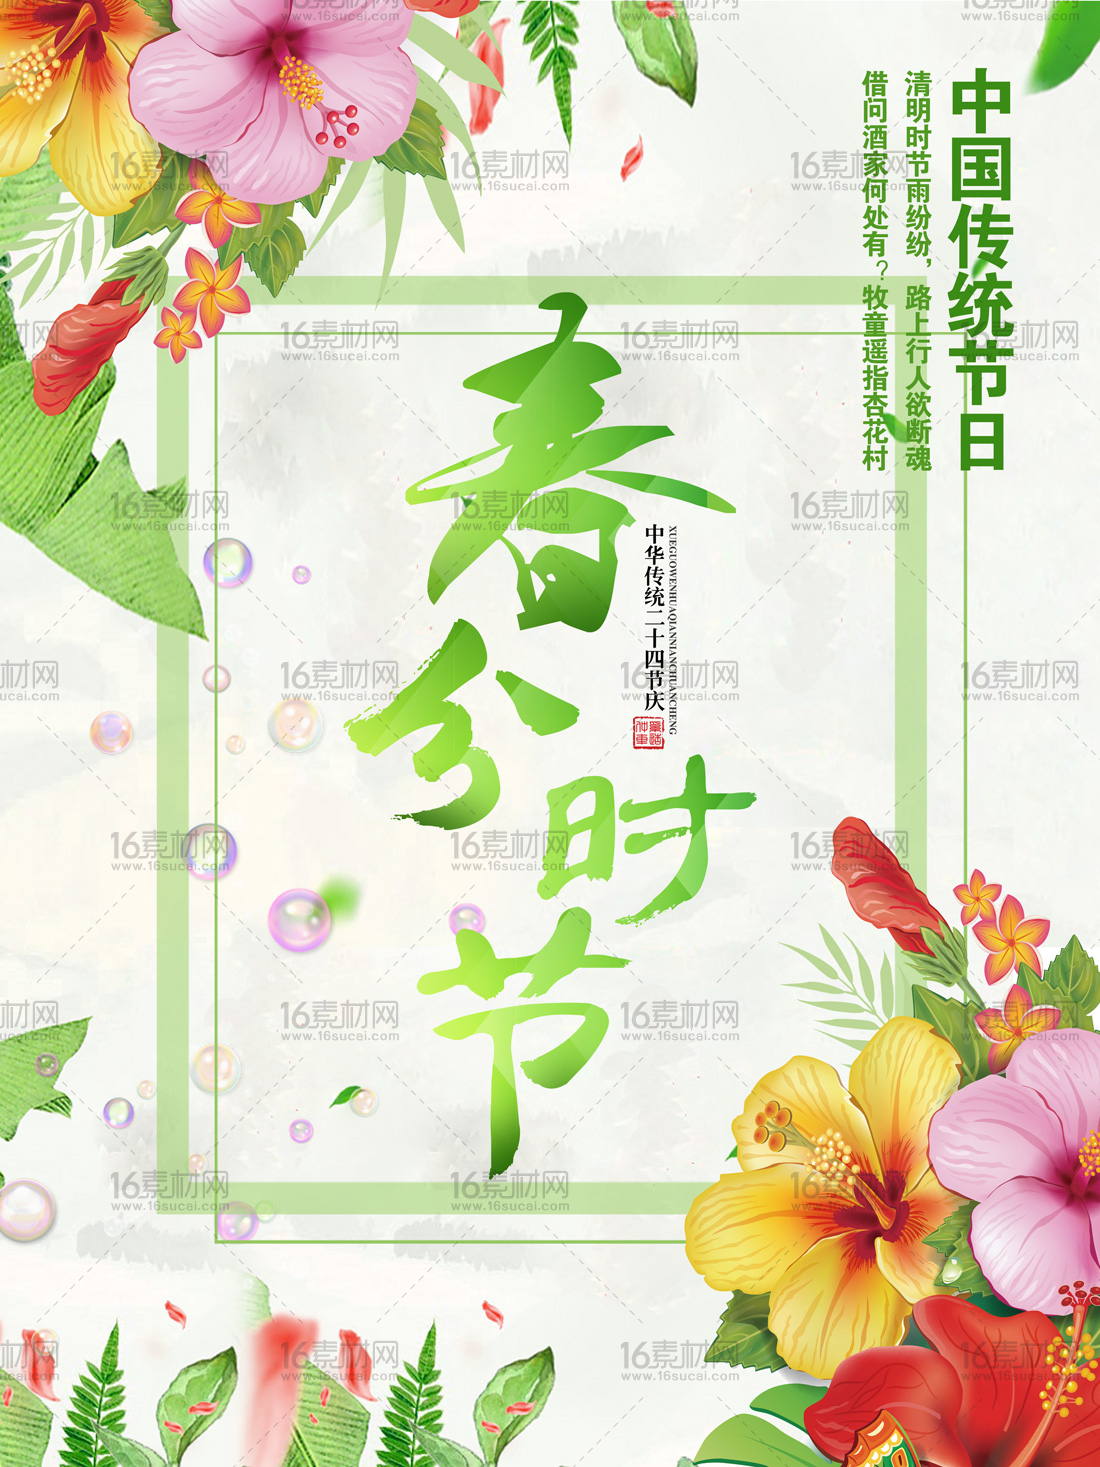 绿色中国传统节日春分时节宣传海报psd分层素材